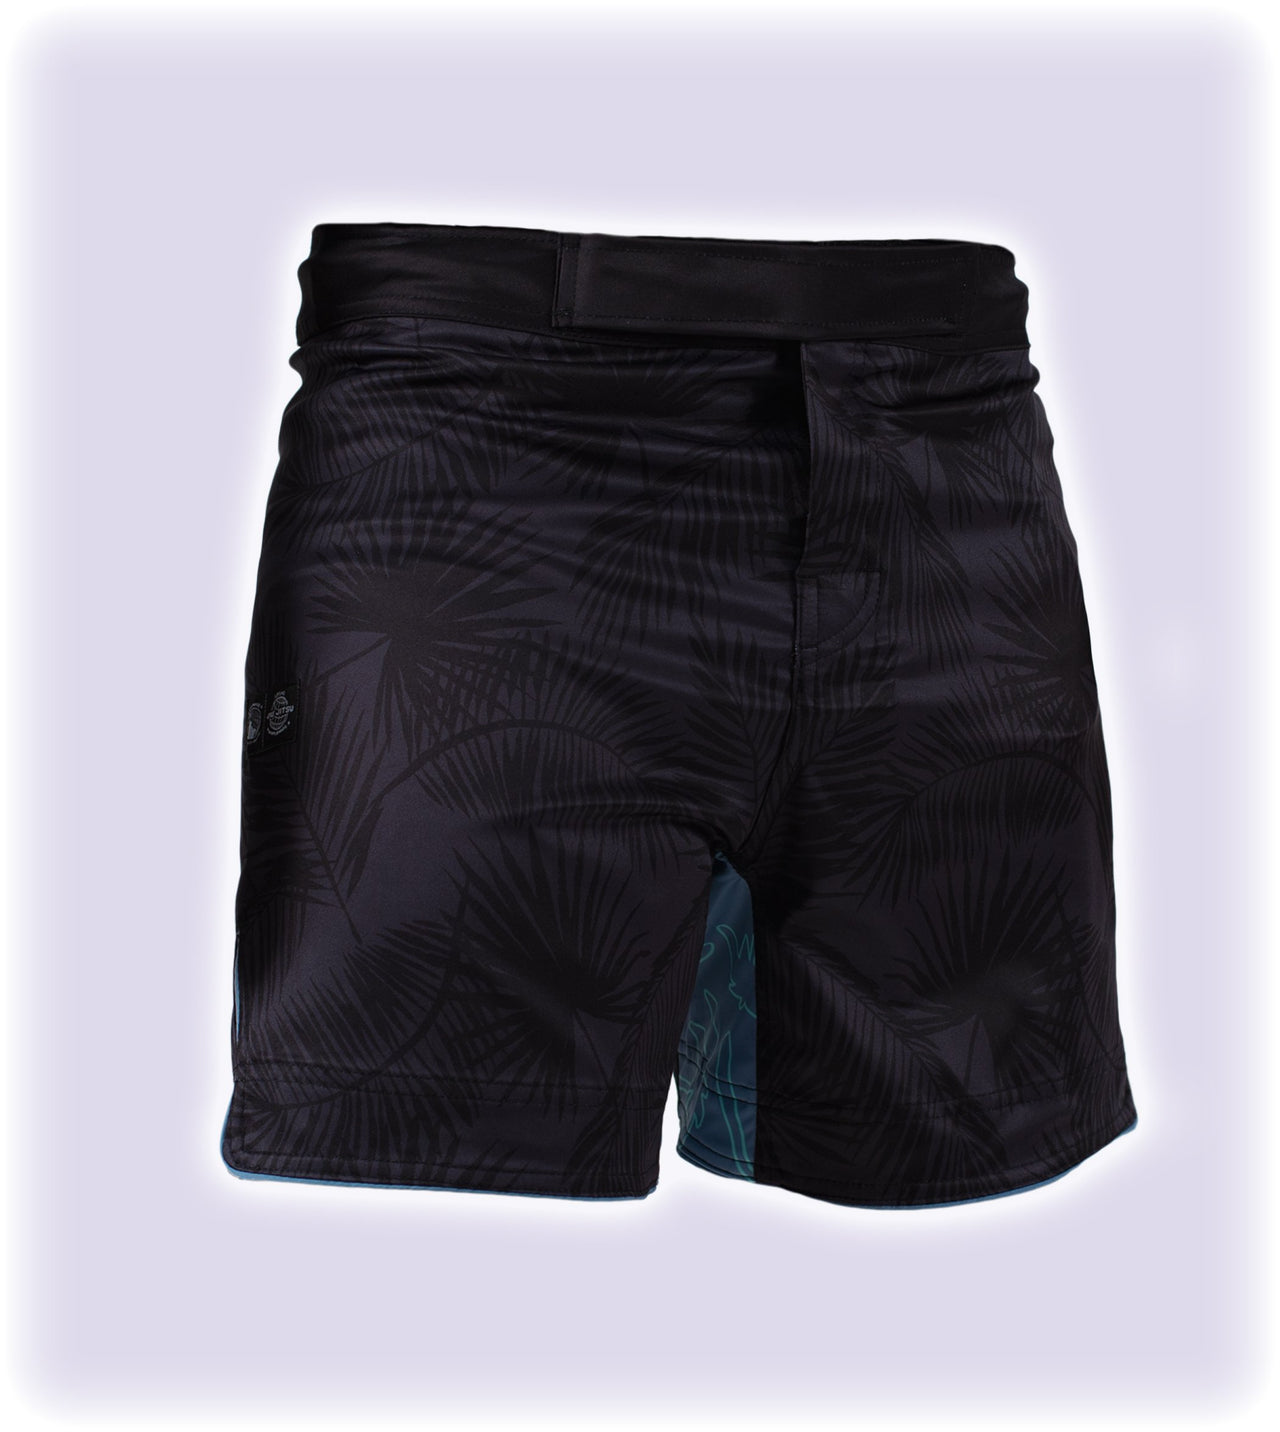 93brand "Palm" Shorts (Short Length)